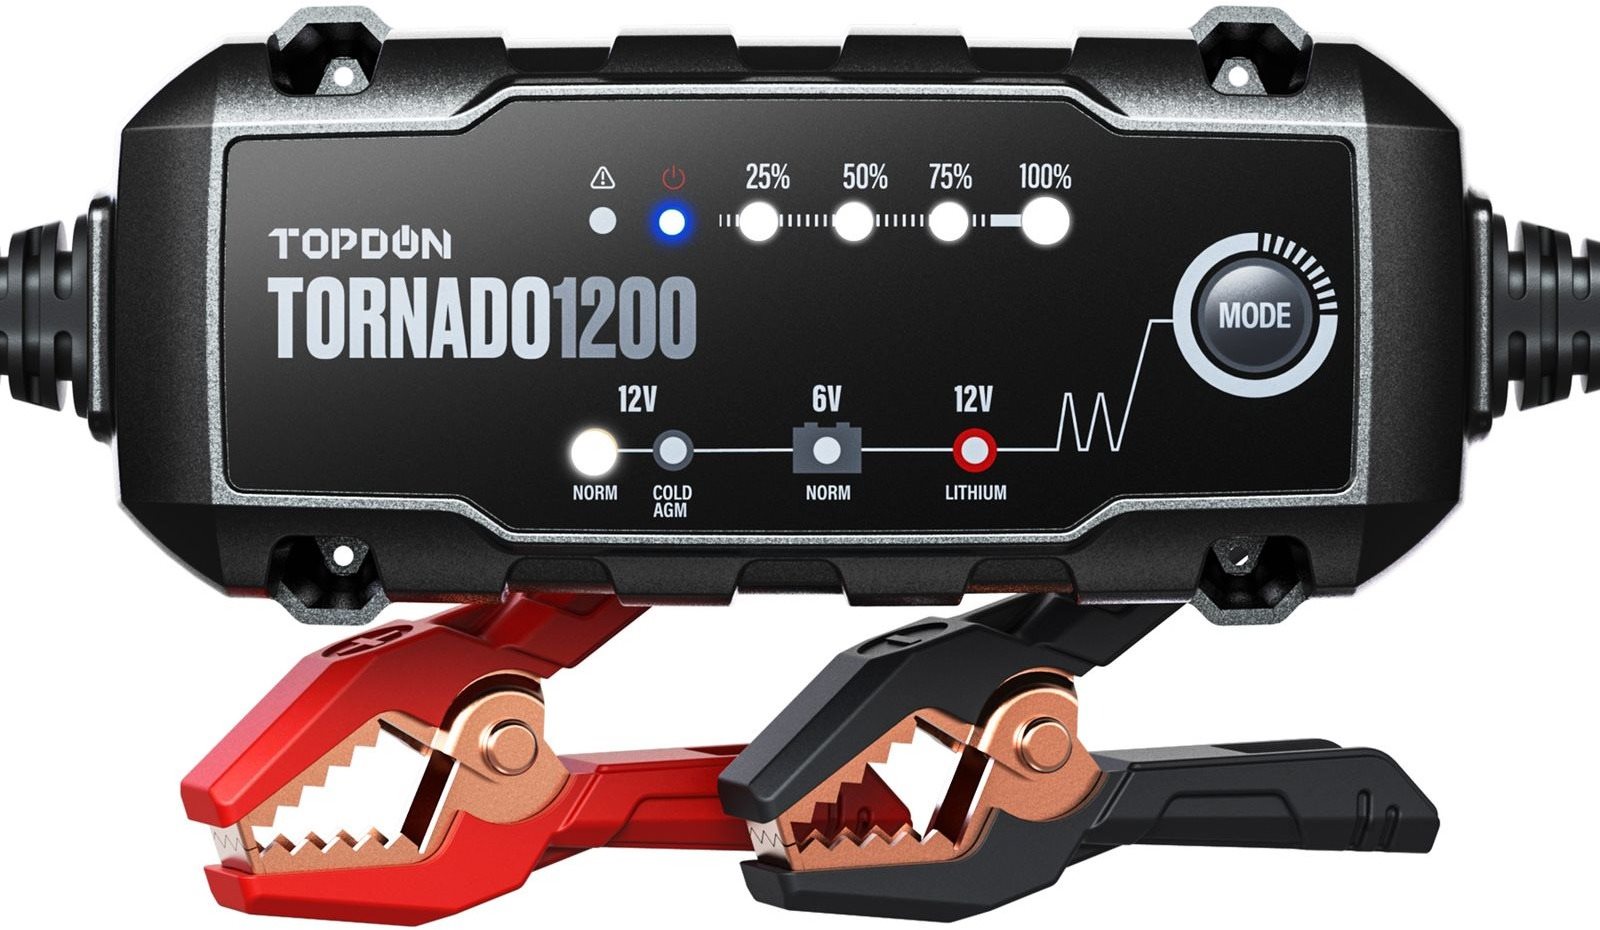 Topdon Tornado 1200